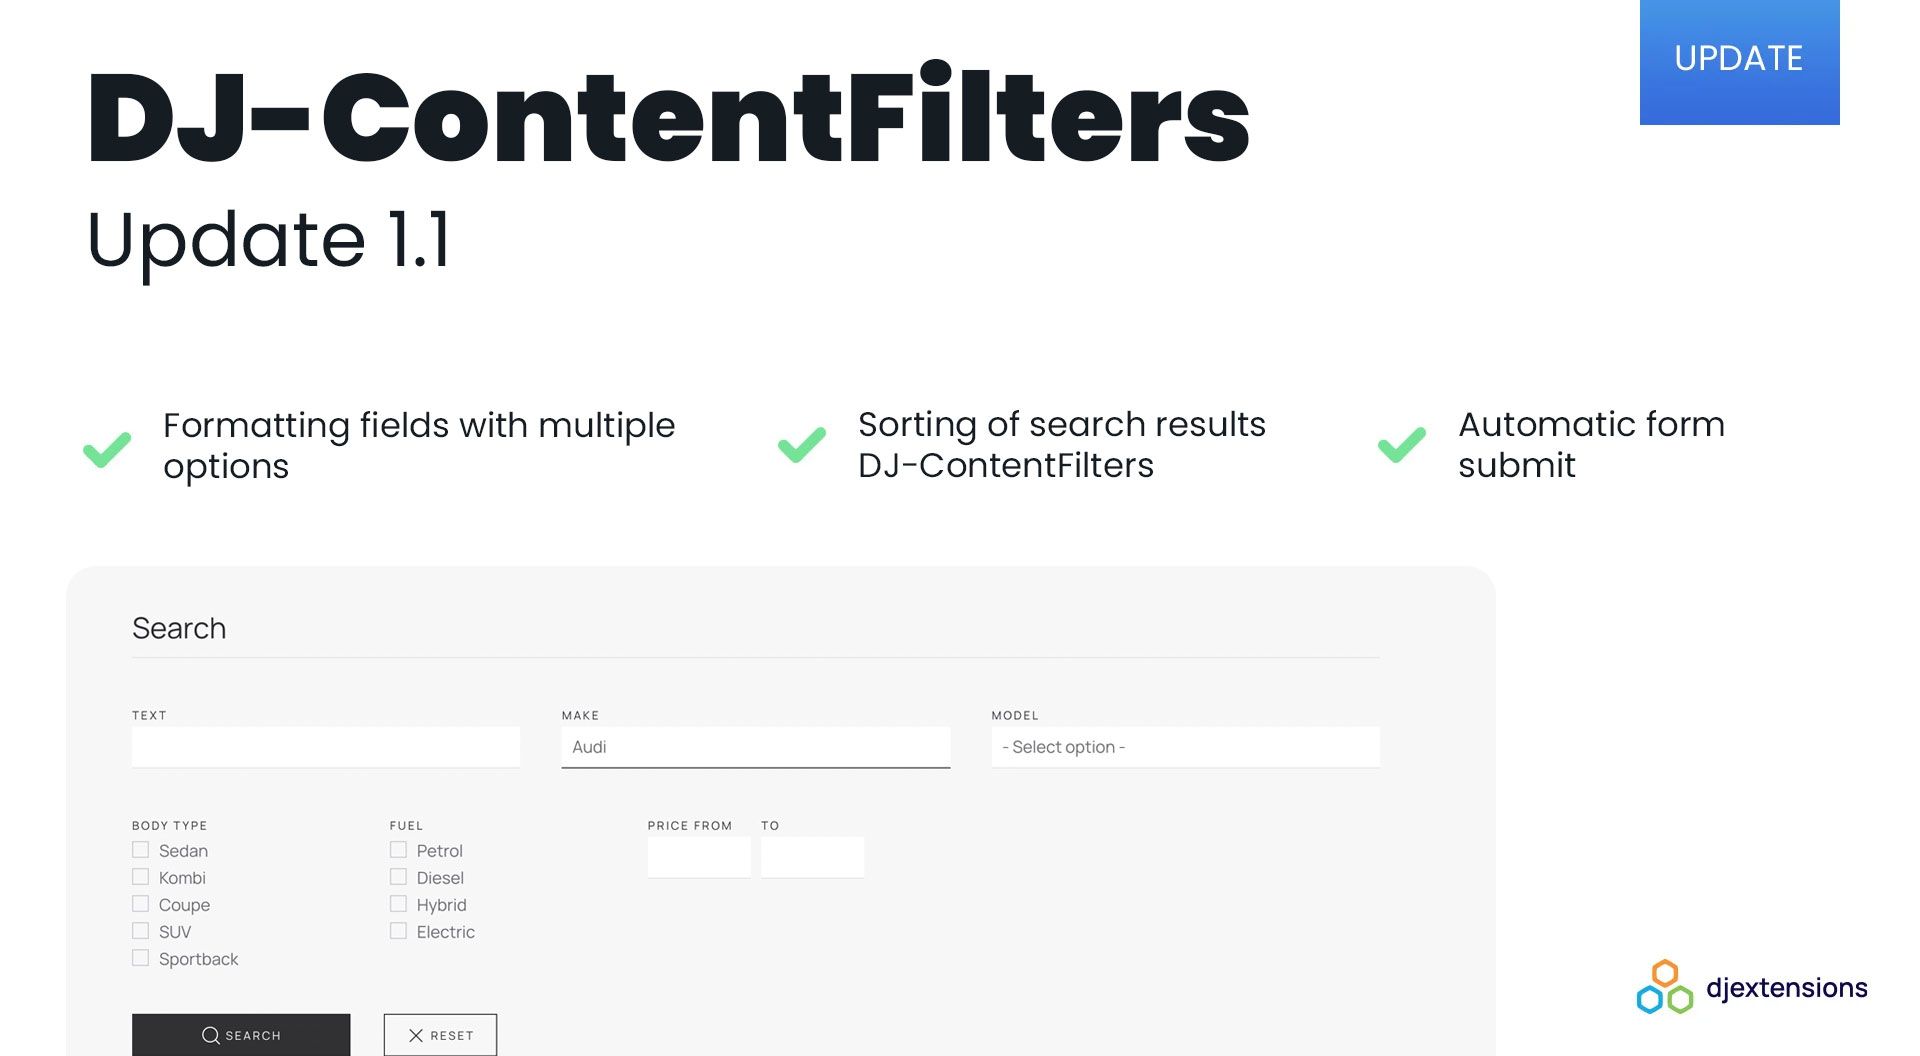 [UPDATE] DJ-ContentFilters Joomla plugin has three new features